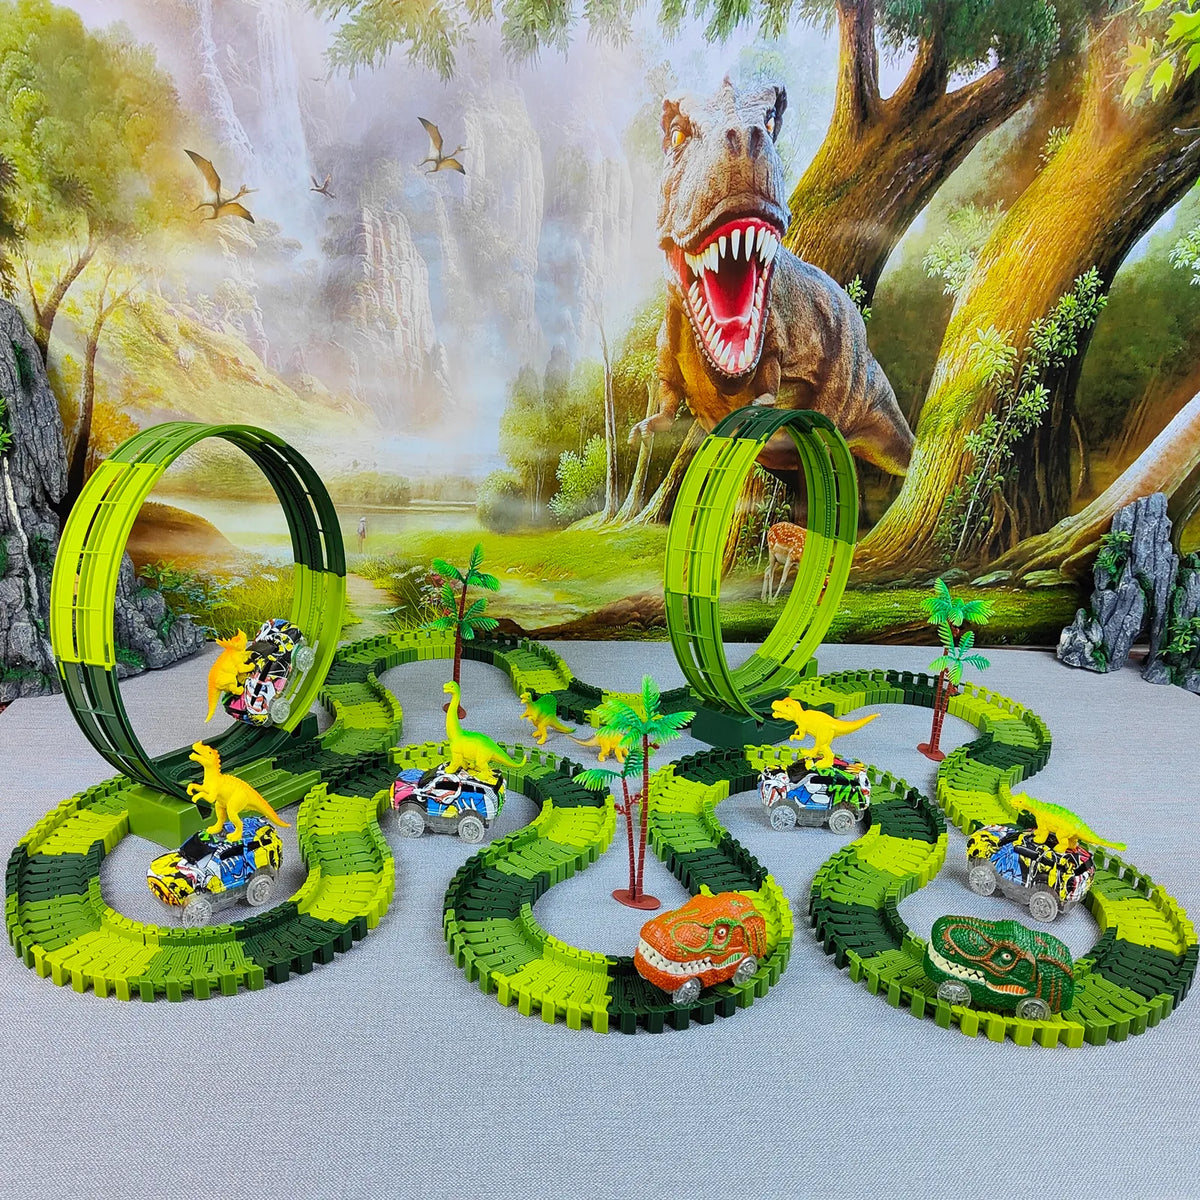 PistaDino - Carrinho de Brinquedo - Cenário de Dinossauros - Kit Pista + Carrinho + Dinossauros